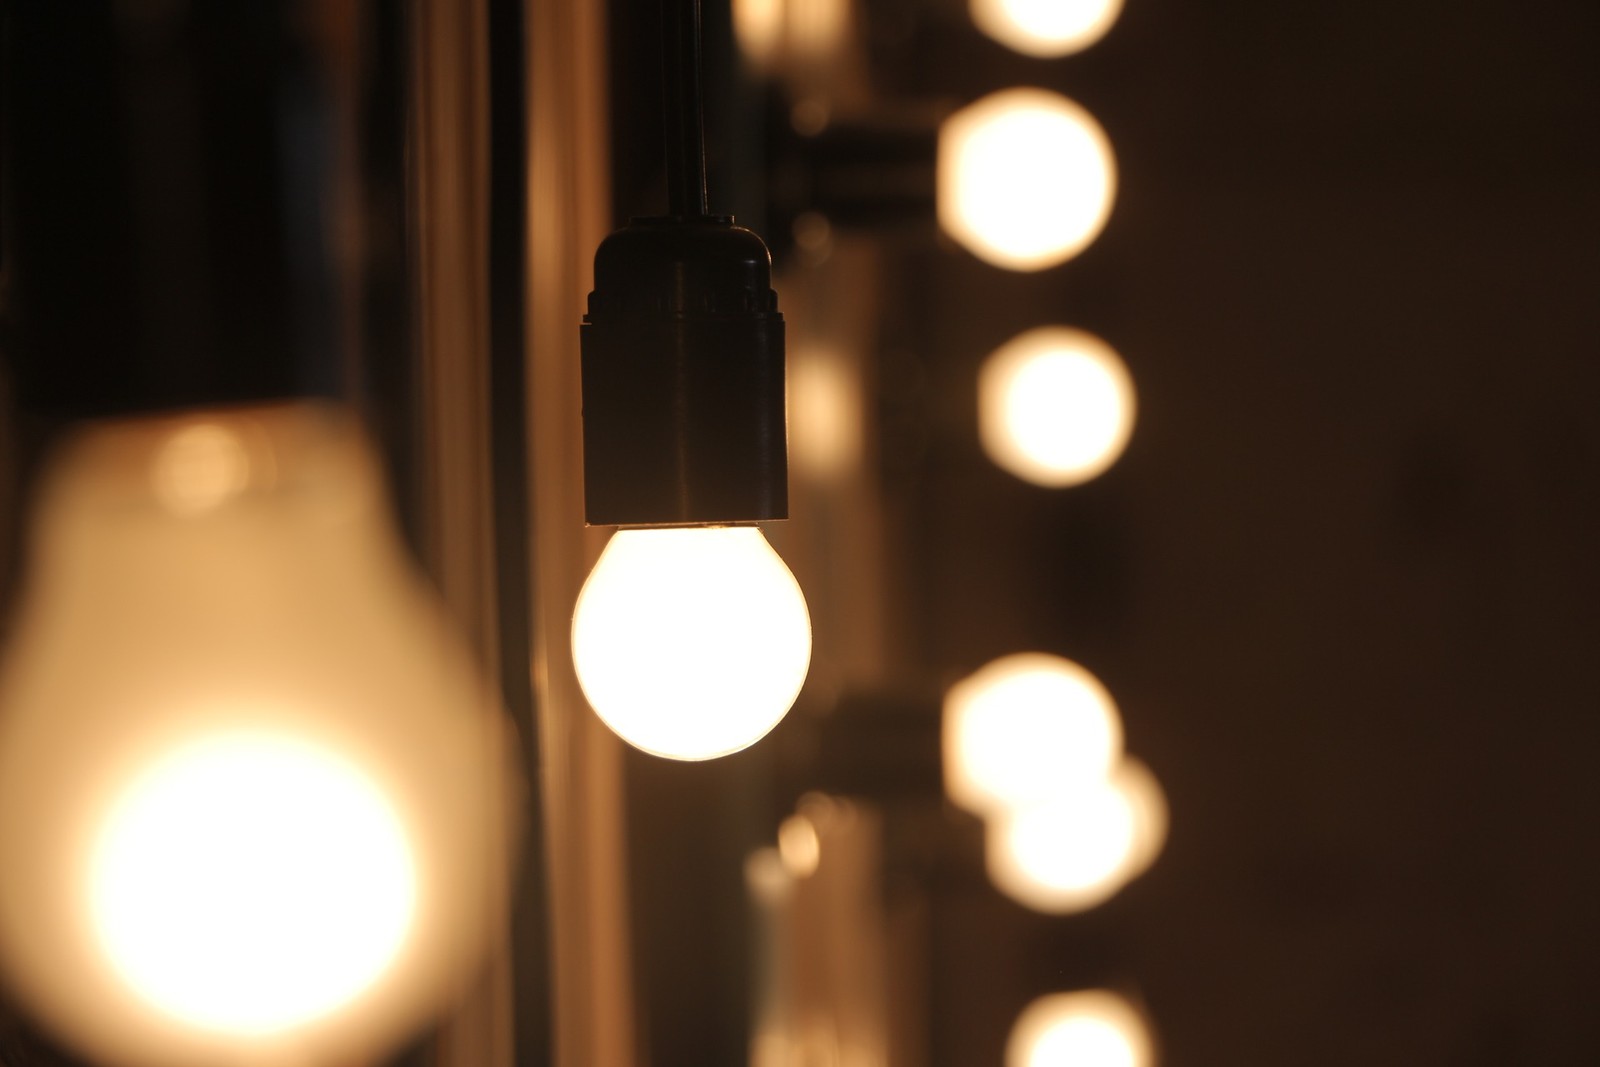 A substituição de lâmpadas incandescentes pelas de LED pode gerar uma redução de 75% a 85% no consumo de energia. Além disso, essas lâmpadas duram mais. Em relação às lâmpadas fluorescentes, a economia é de cerca de 40%Pixabay